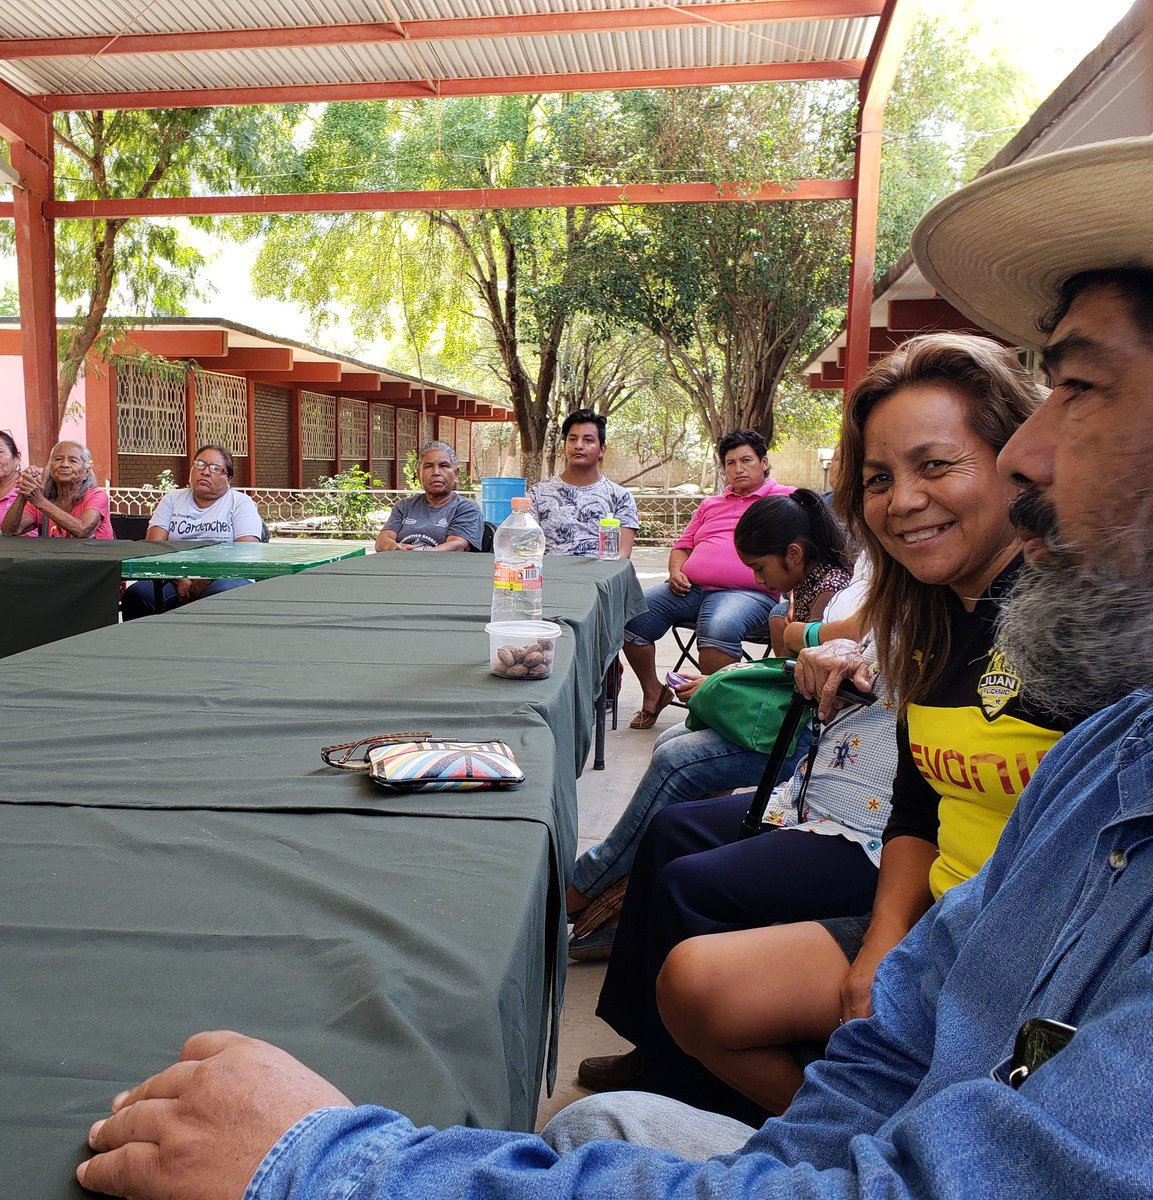 Muchas felicidades a #FundaciónJimulco por los 15 años de haber constituido el Area Protegida del #CañónDeJimulco. Gracias a su trabajo y al de sus pobladores no solo han logrado salvar este ecosistema, también han logrado construir un modelo de gobernanza. Gracias X invitarnos.